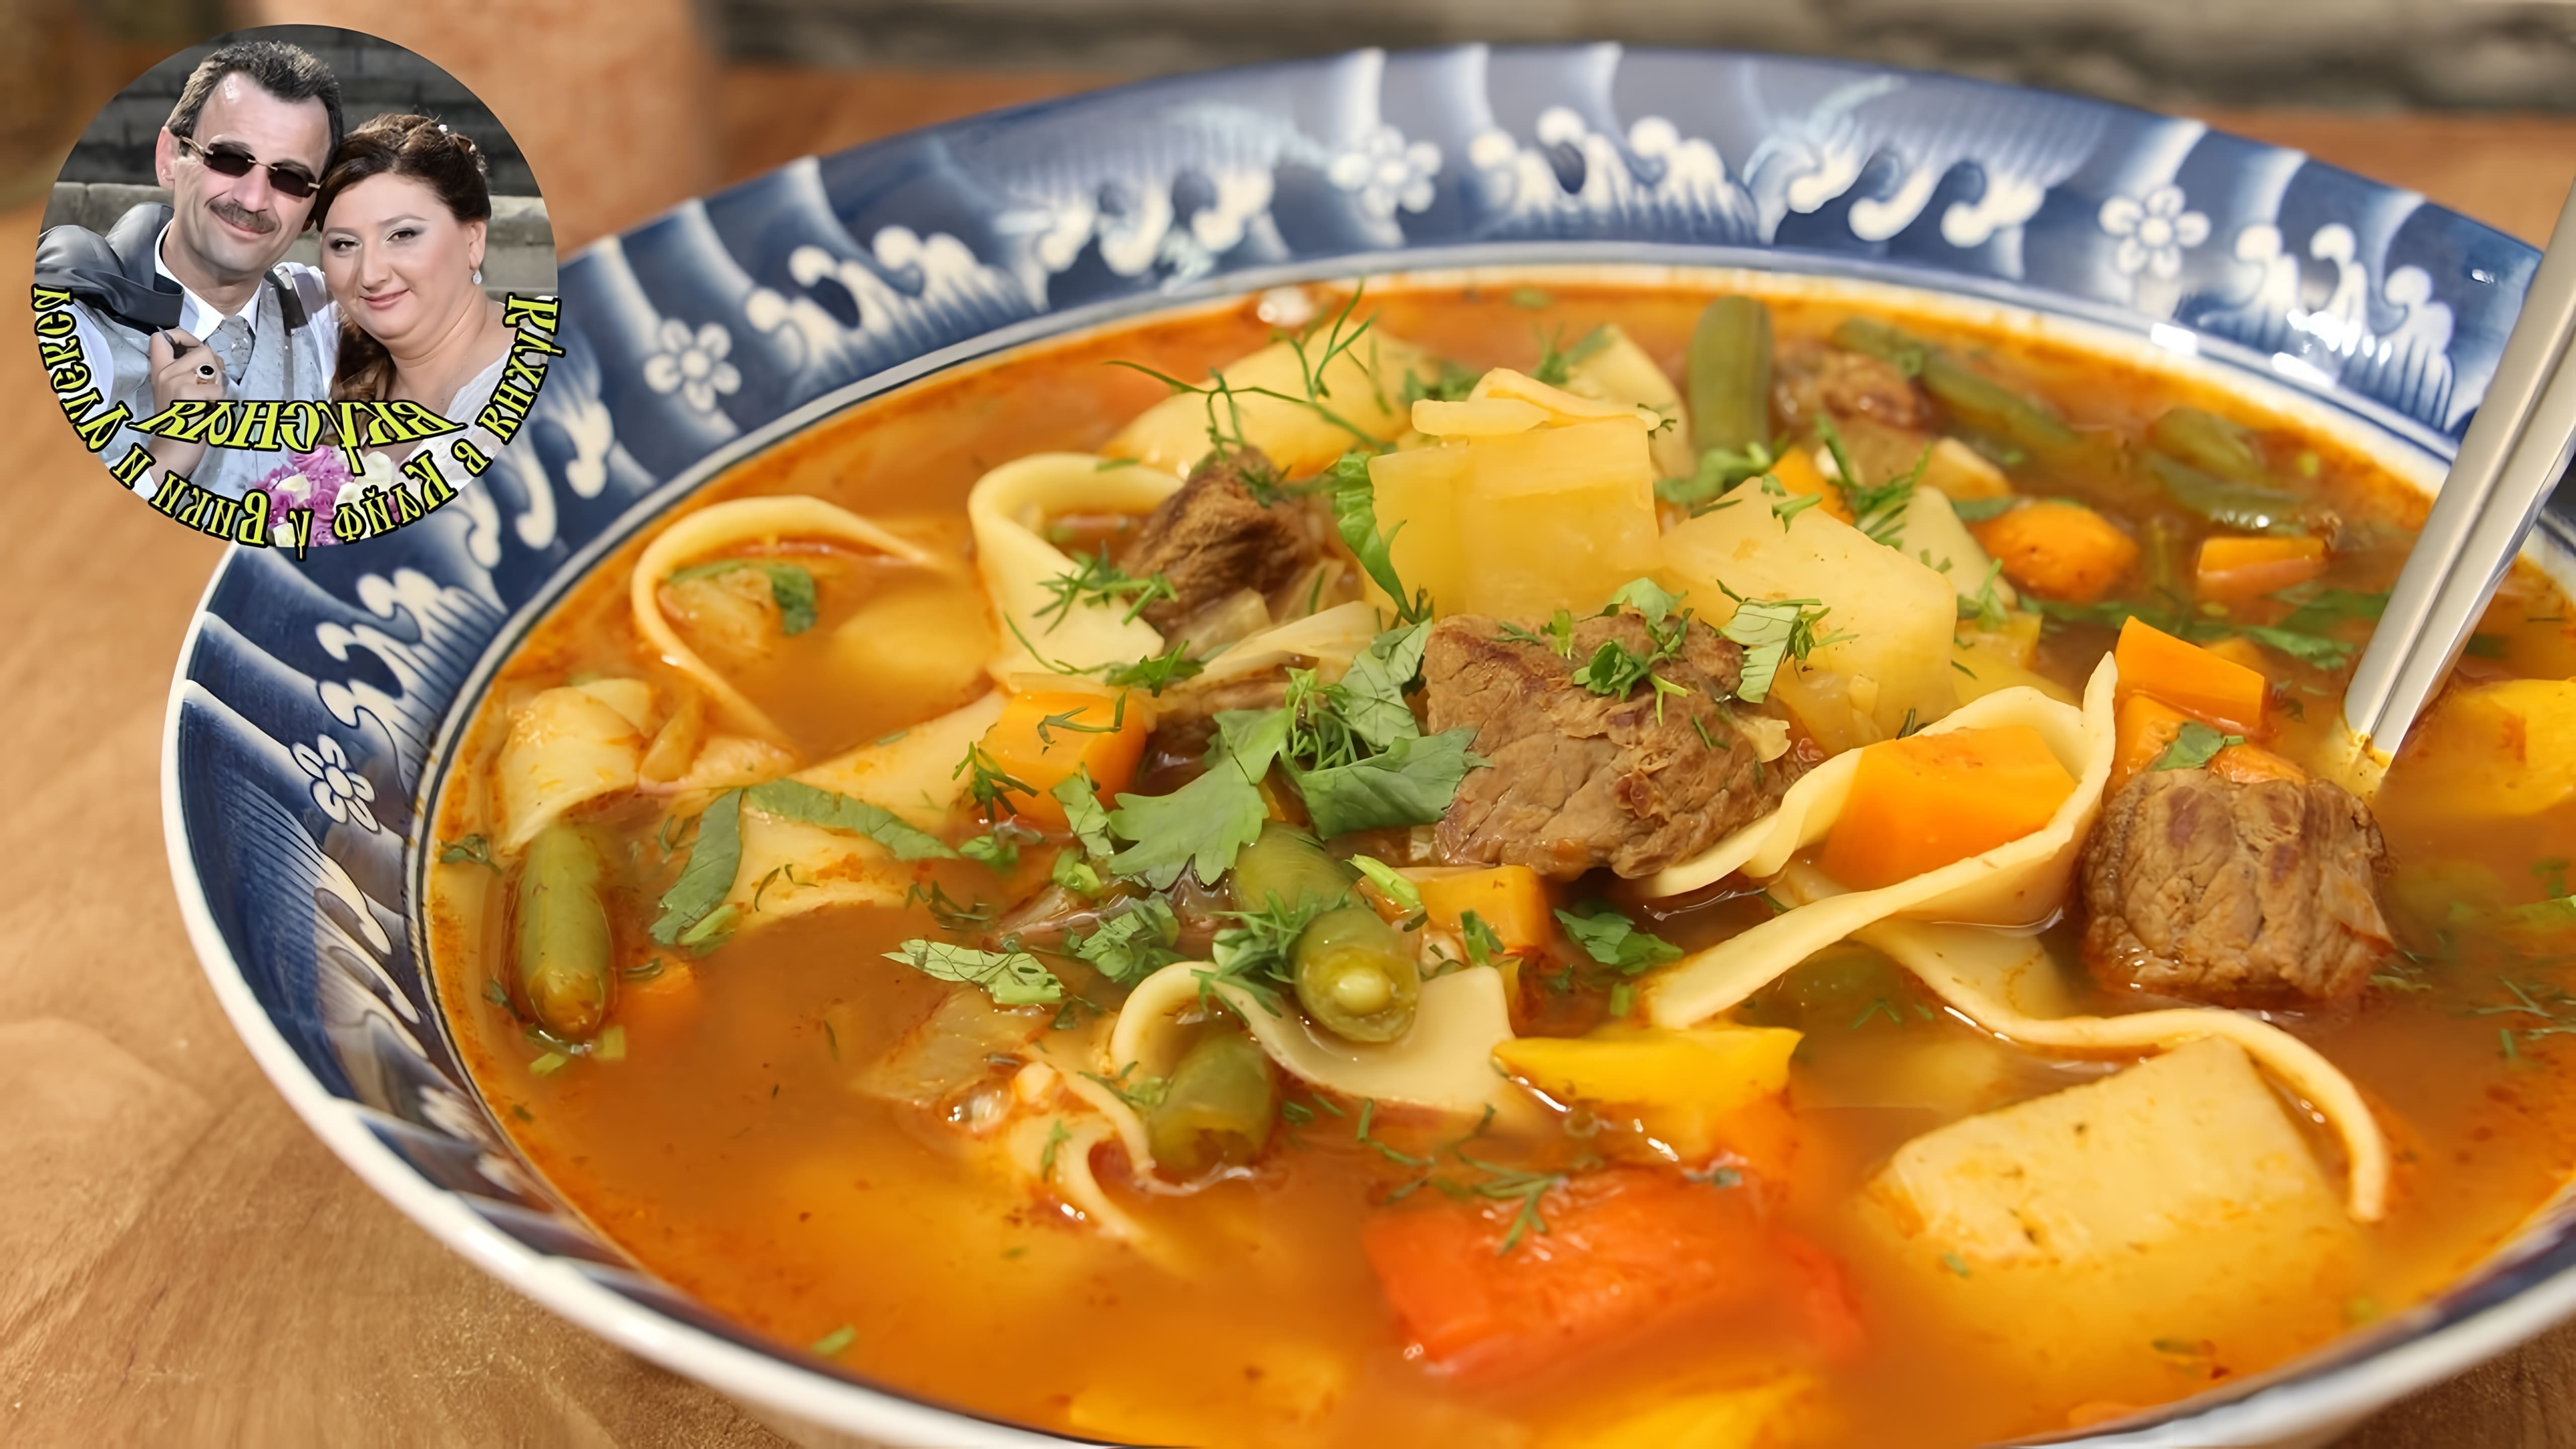 В этом видео демонстрируется процесс приготовления супа с говядиной и овощами